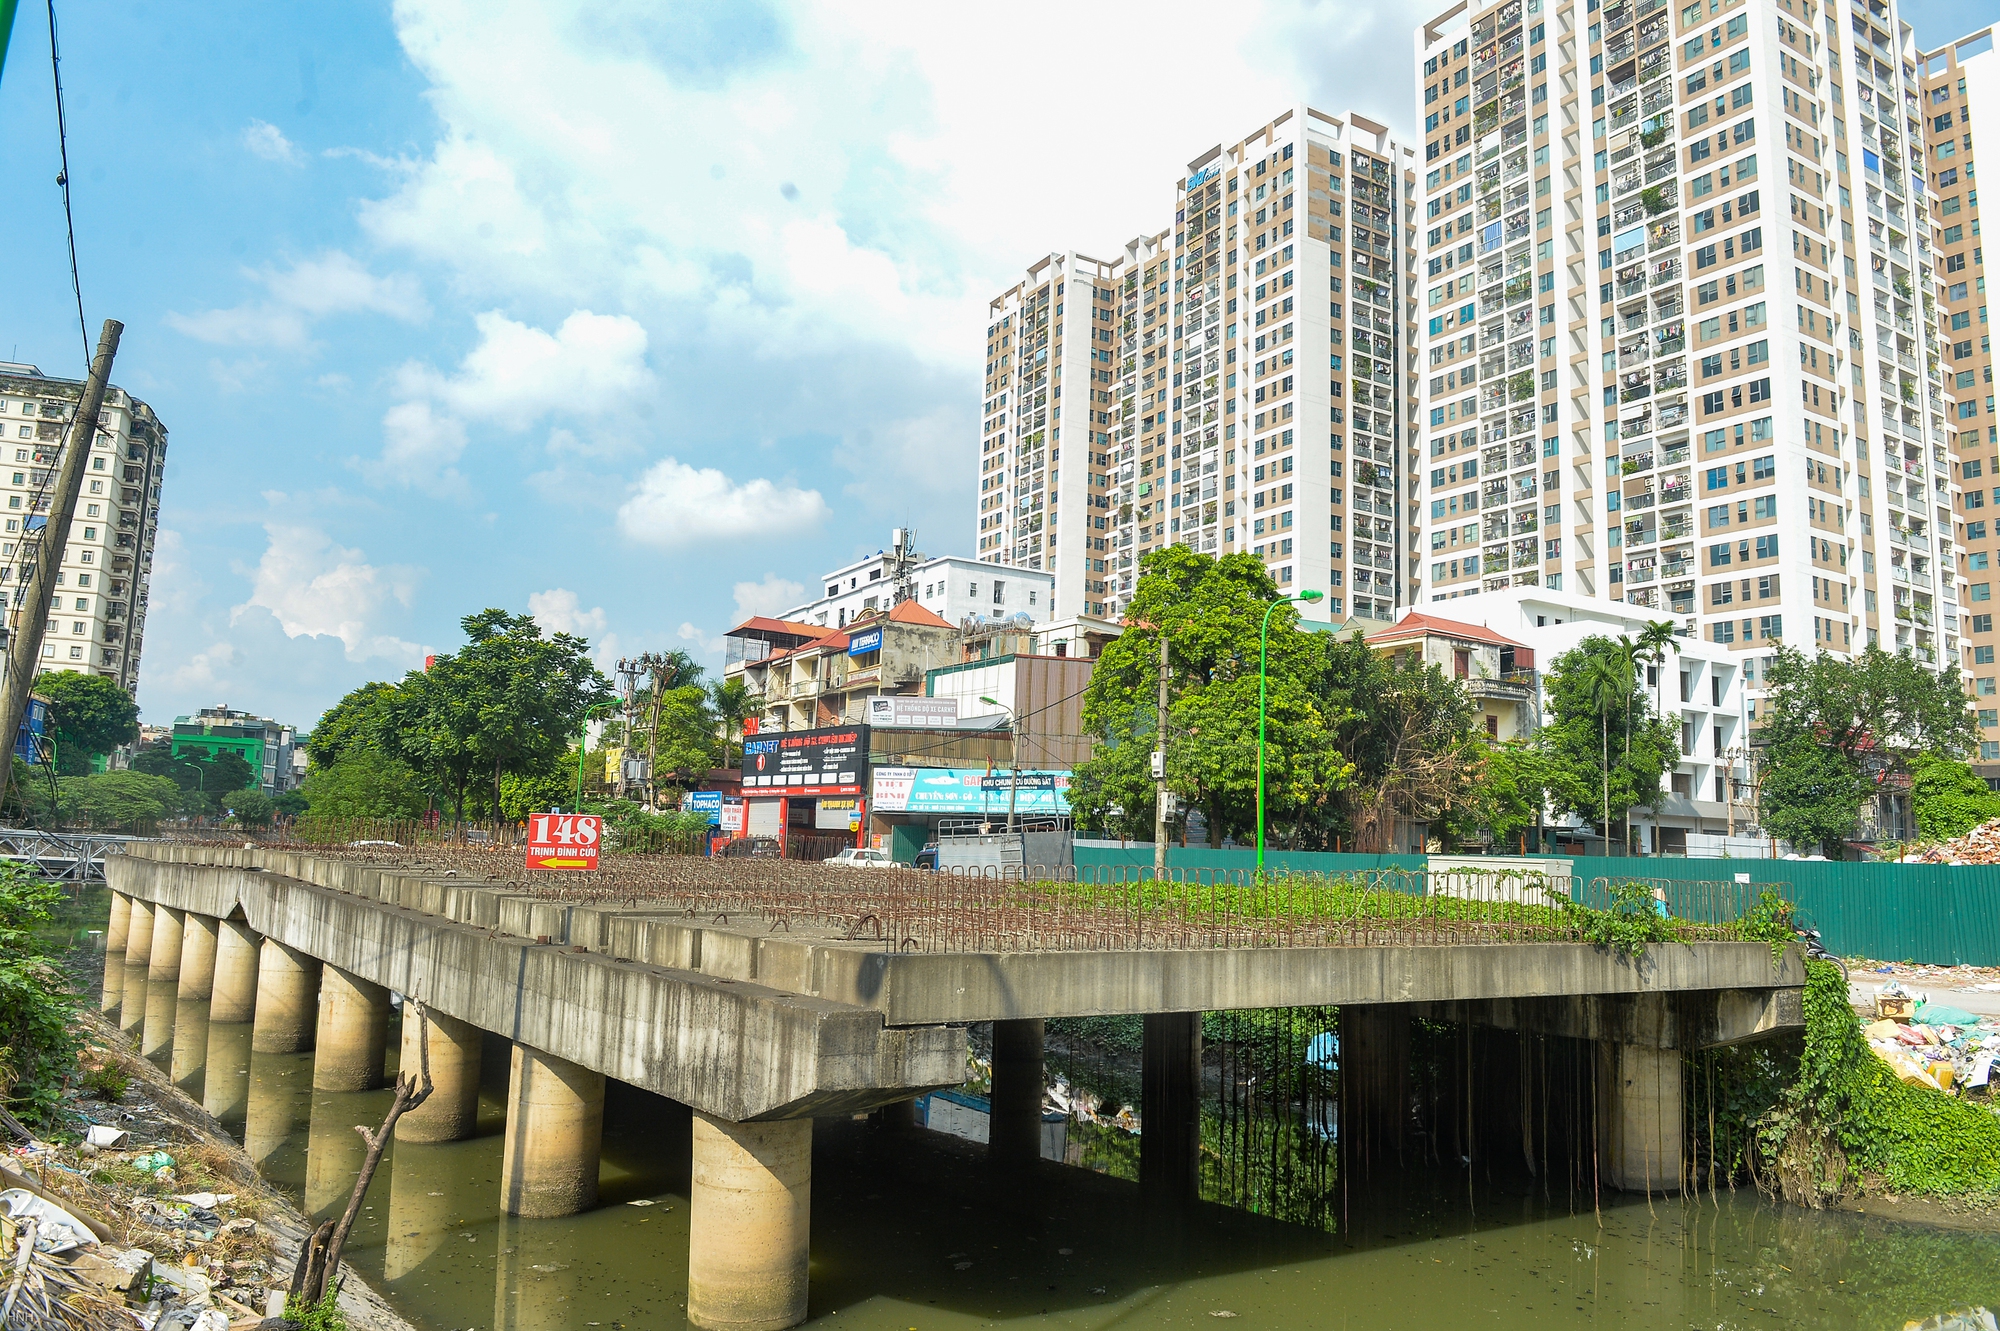 Hà Nội: Cầu L3 bắc qua sông Lừ gần 10 năm chưa hoàn thiện - Ảnh 4.